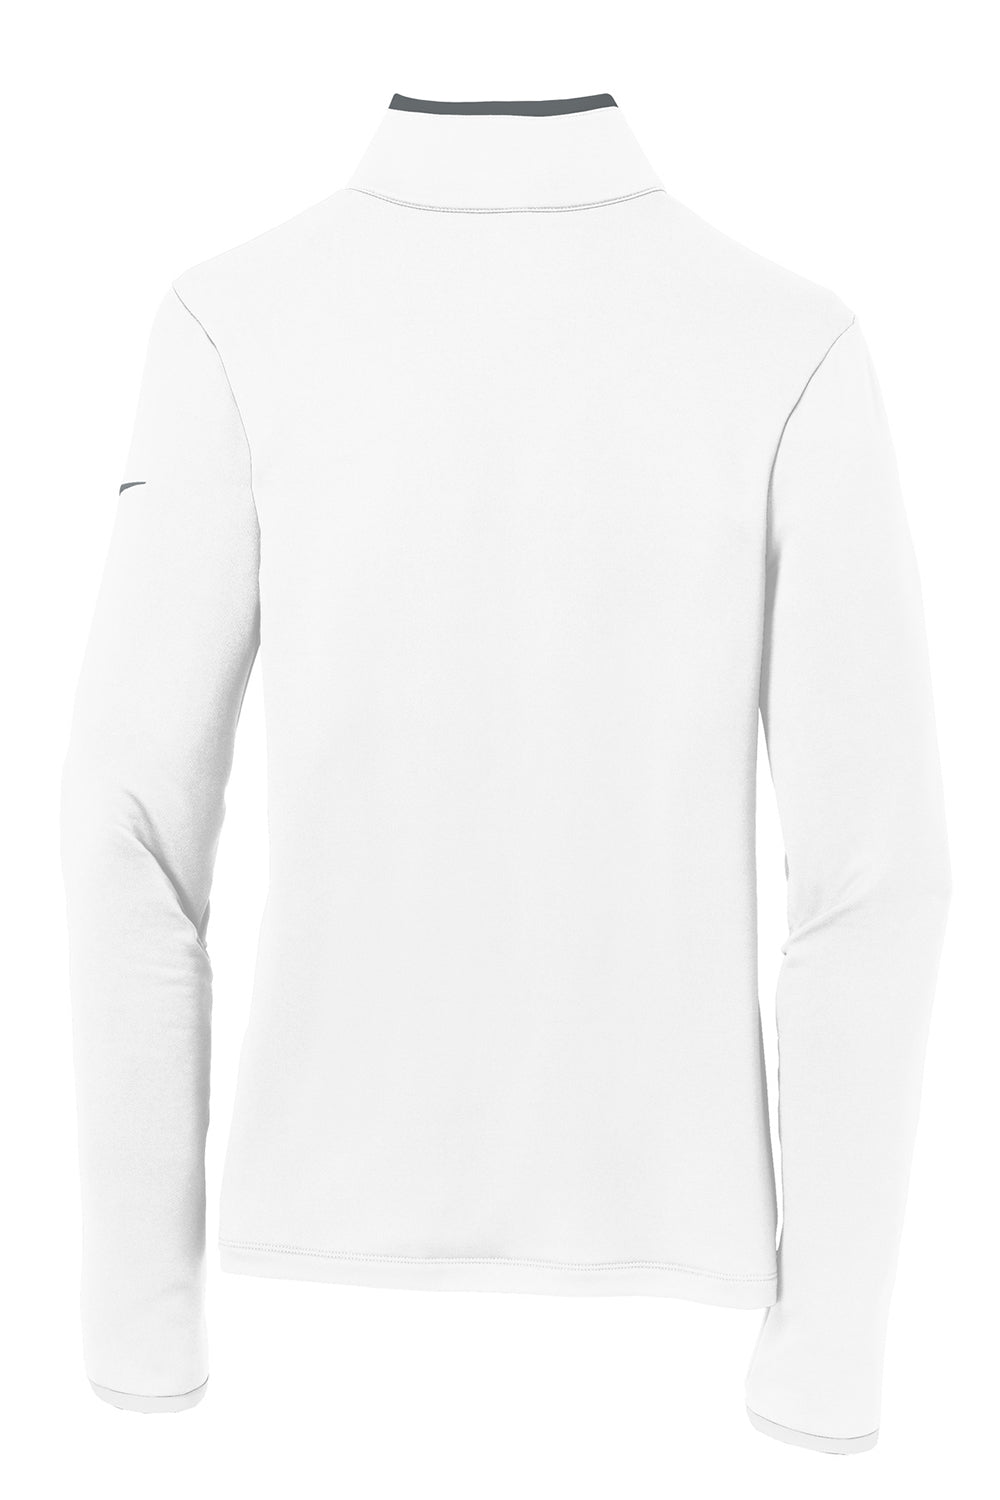 Nike 779796 Womens Dri-Fit Moisture Wicking 1/4 Zip Sweatshirt White/Dark Grey Flat Back